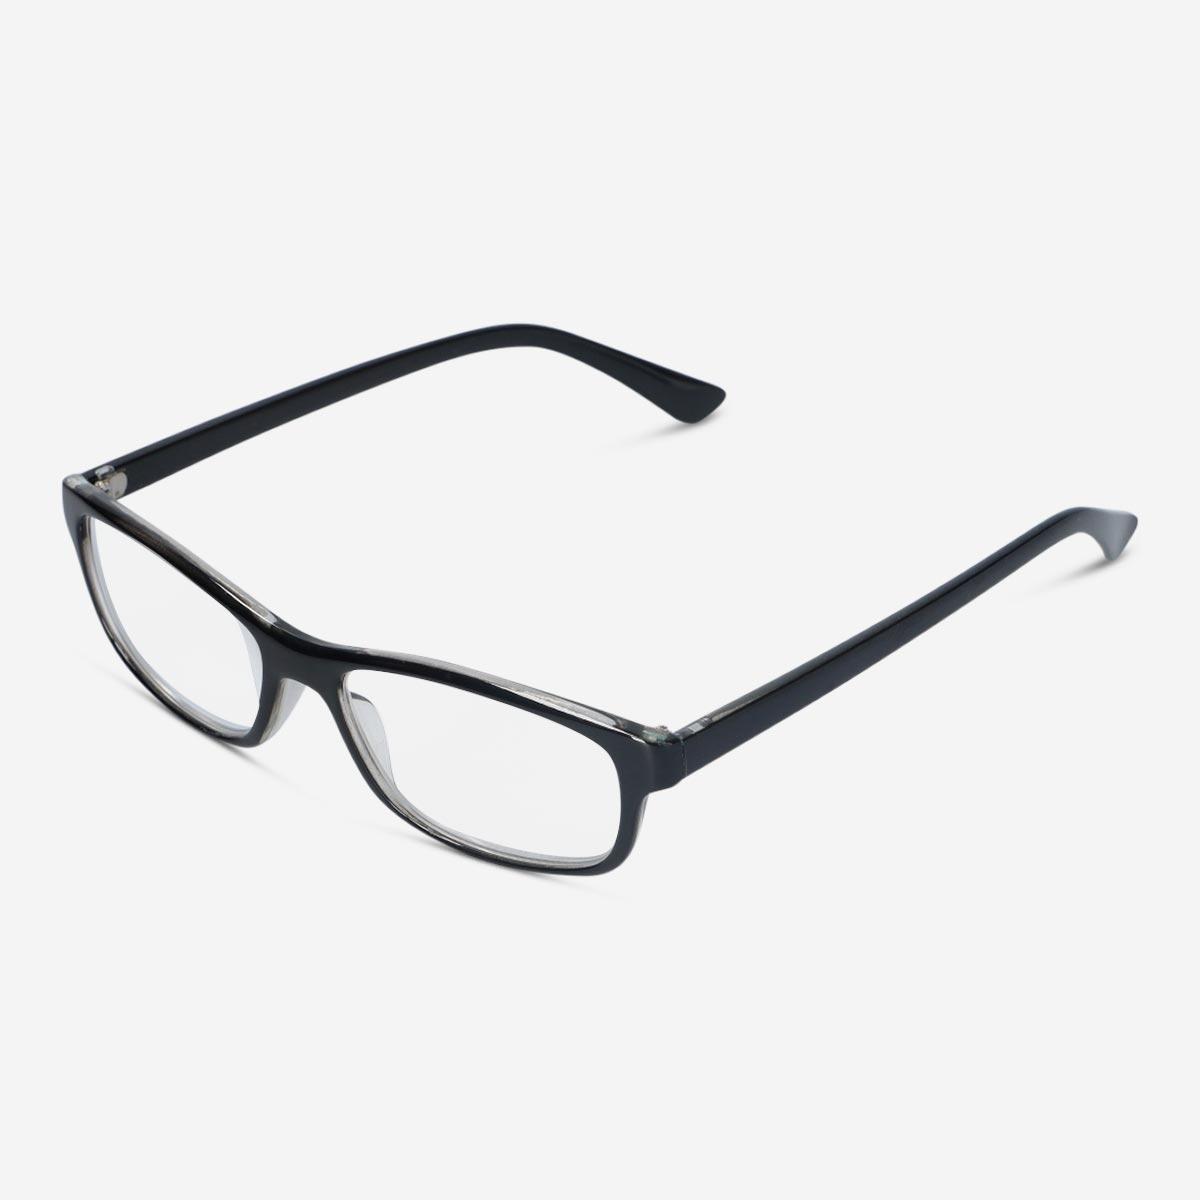 Black reading glasses. + 3.5